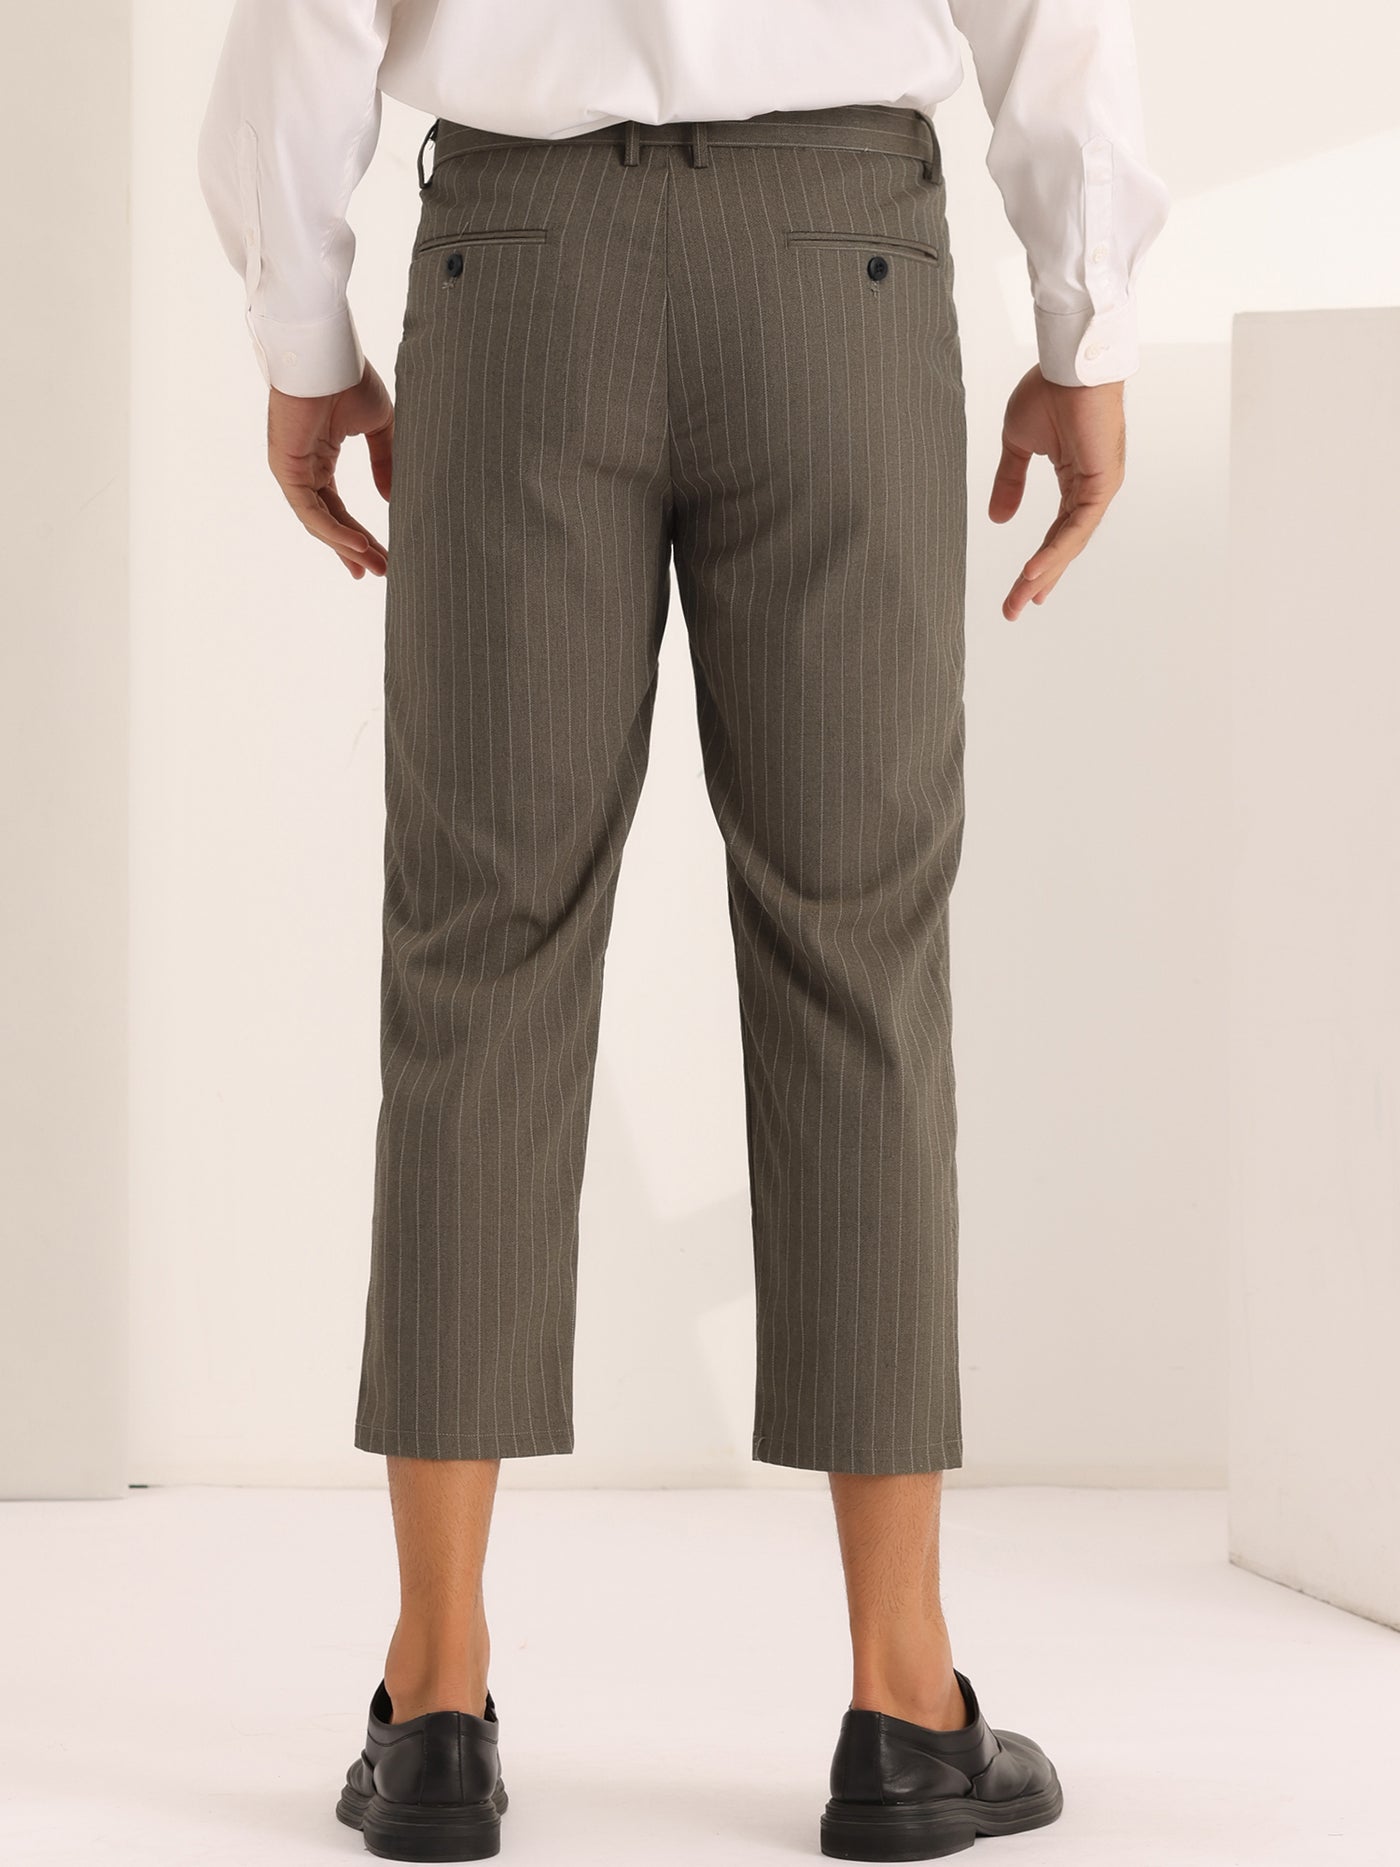 Bublédon Men's Striped Croppe pes Ankle Length Business Pants